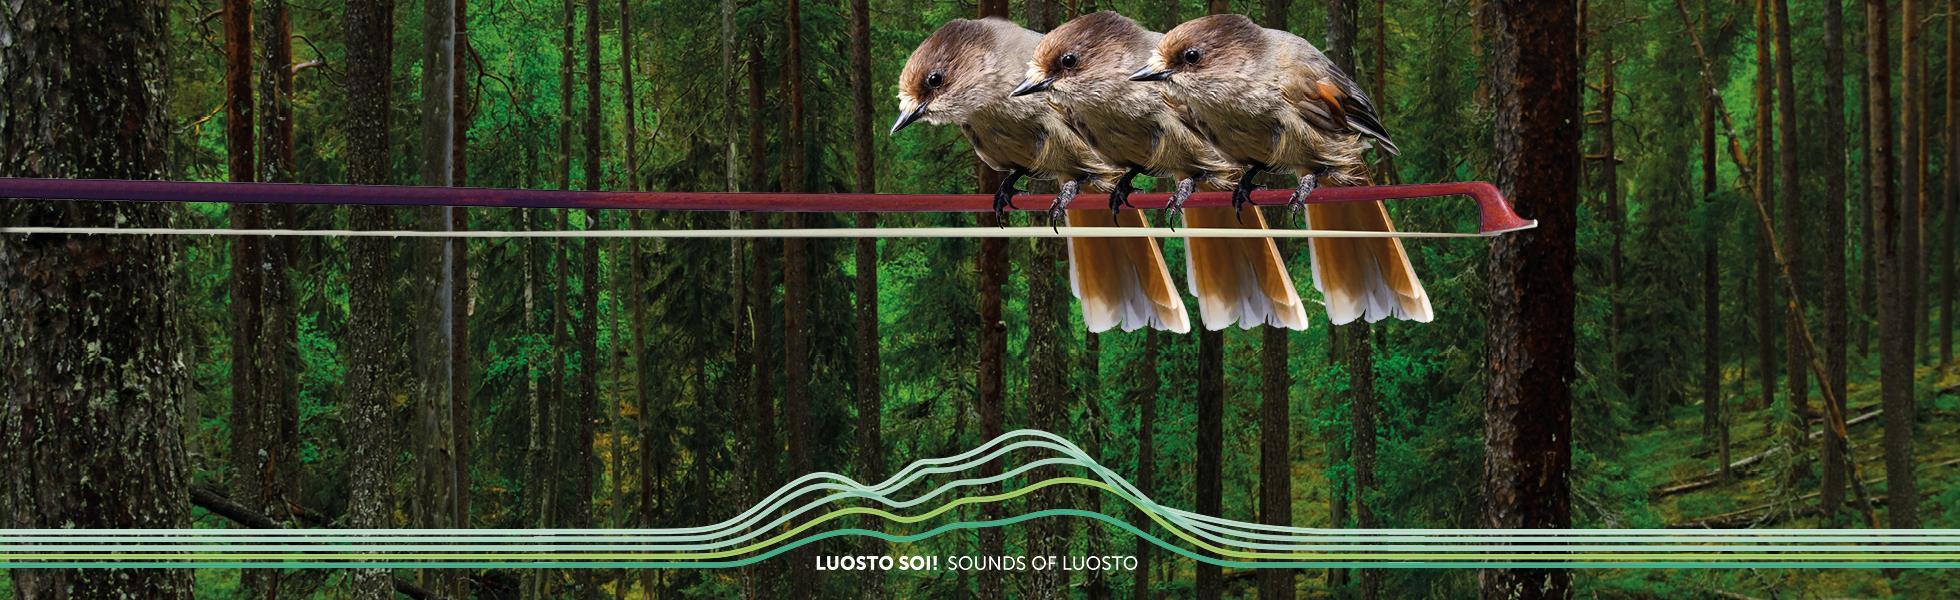 Harmonies de Luosto! Le programme du Festival de l’été 2022 et de ses artistes vient d’être publié!